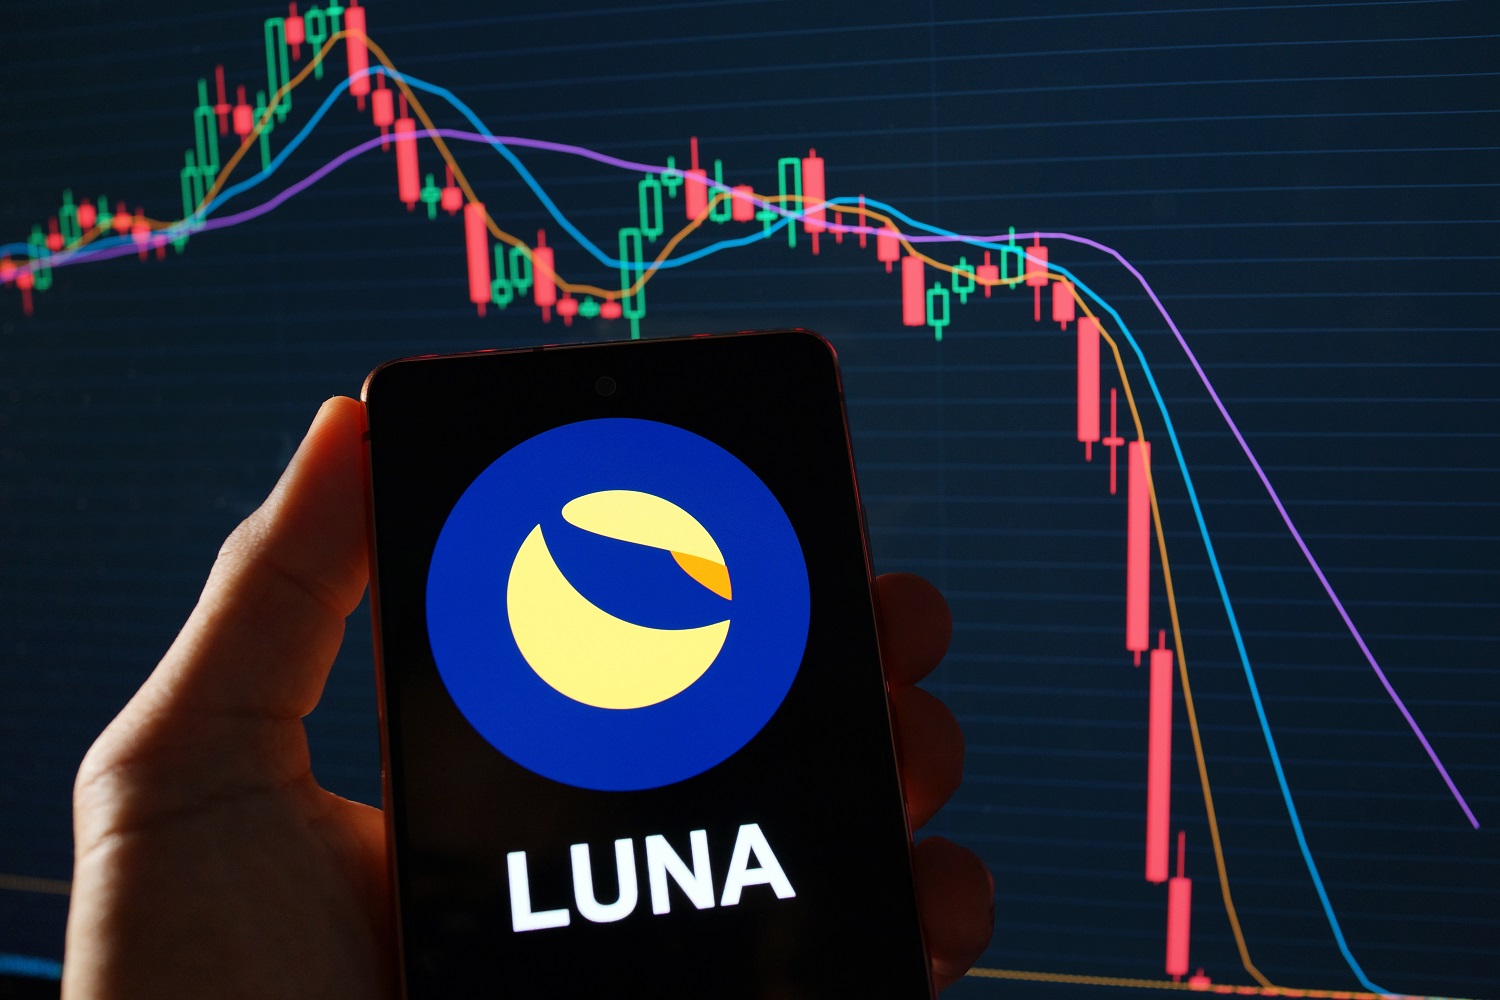 Terra Luna Koers Verwachting bearish nu investeerders wereldwijd van LUNC afstappen en voor deze Nieuwe Crypto Kiezen